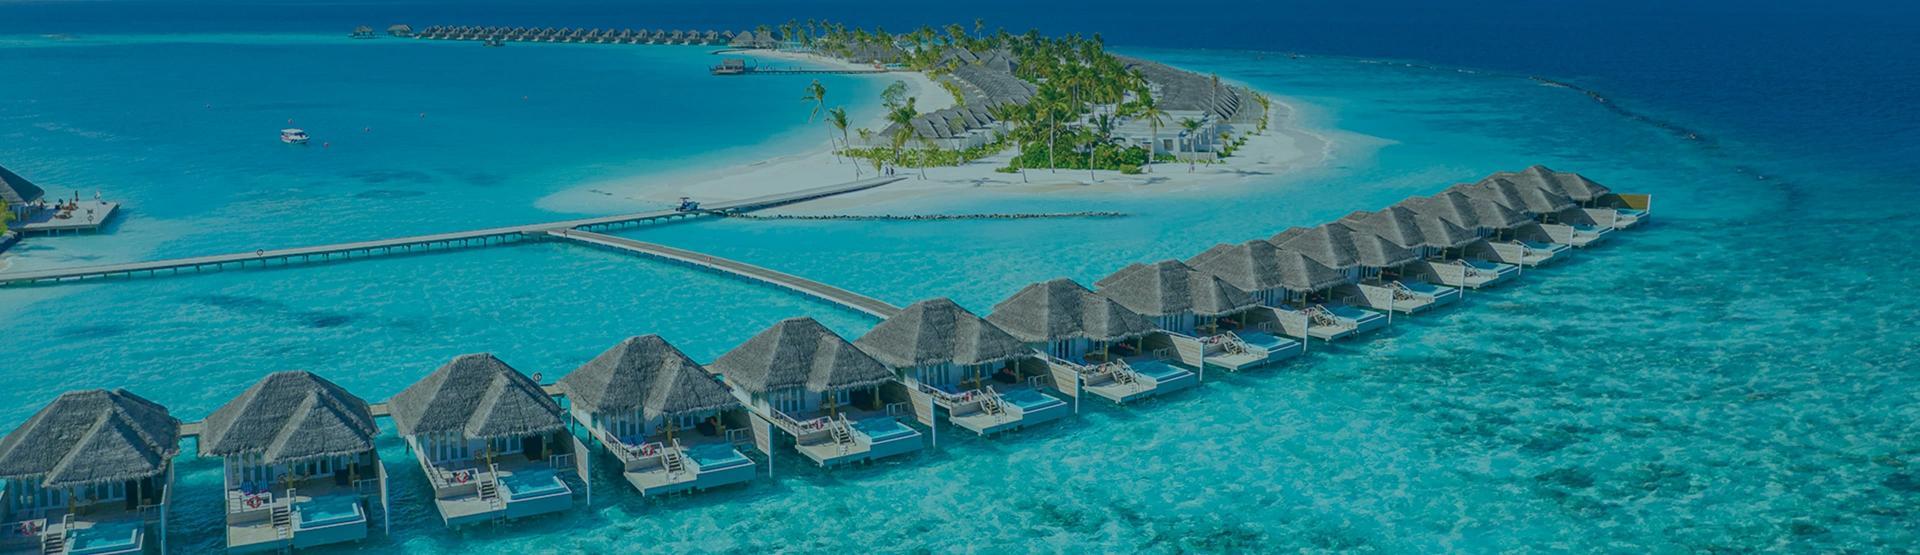 حجز رحلات طيران من مينهاد اب إلى جزر المالديف